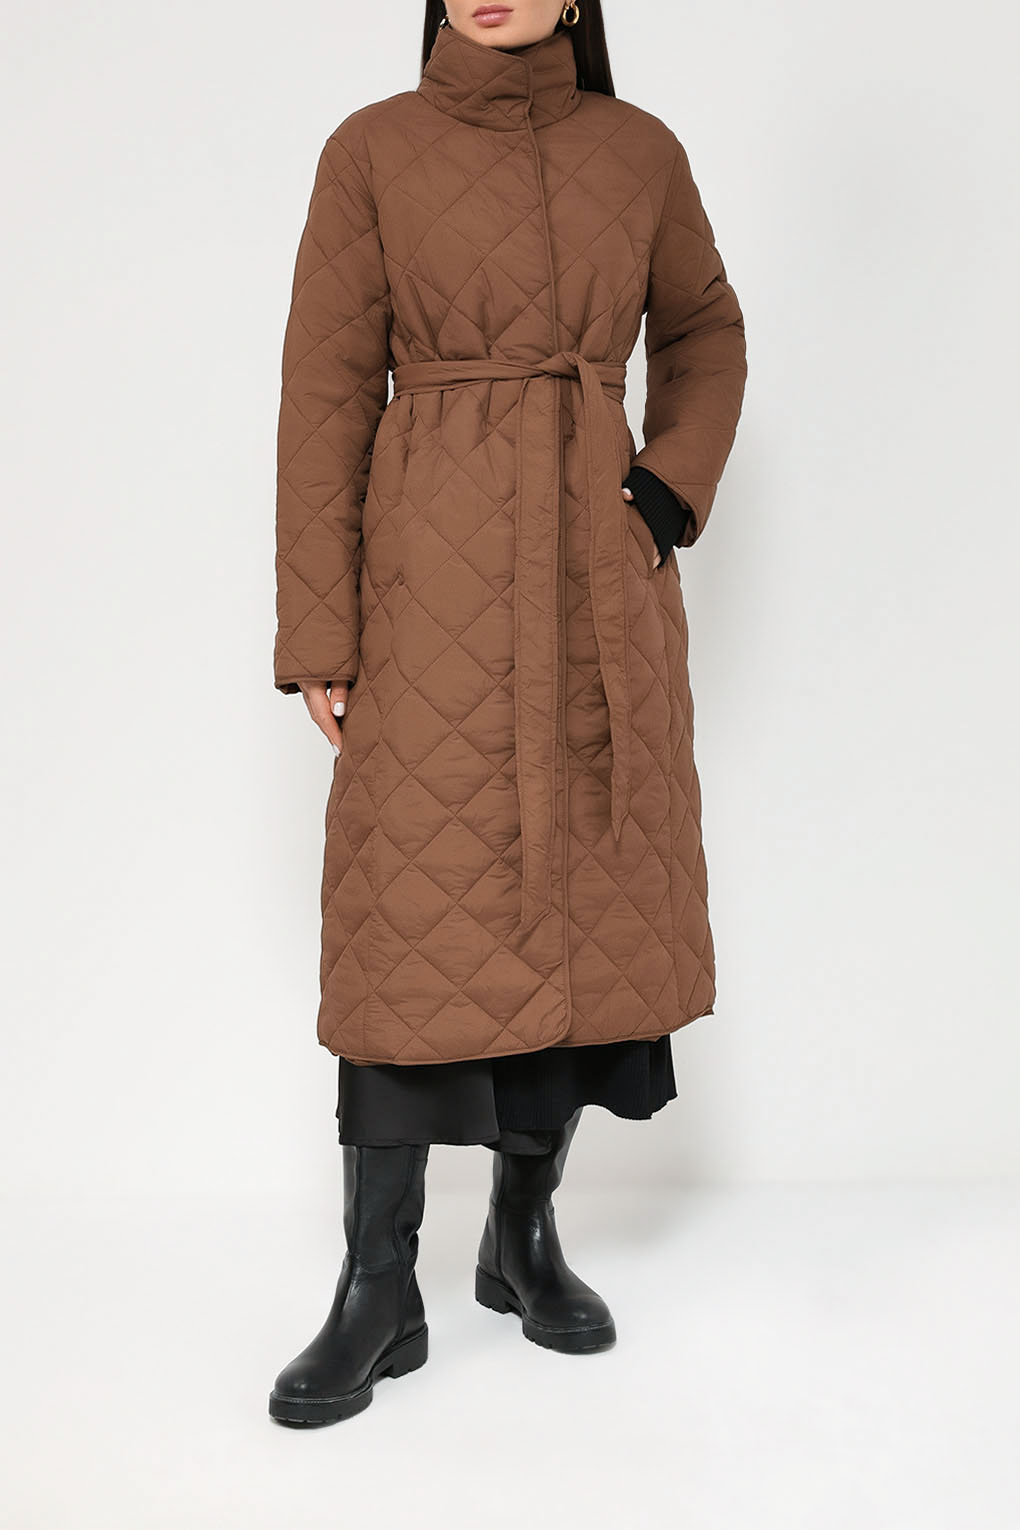 Пальто женское Auranna AU23106266CD коричневое 54 RU